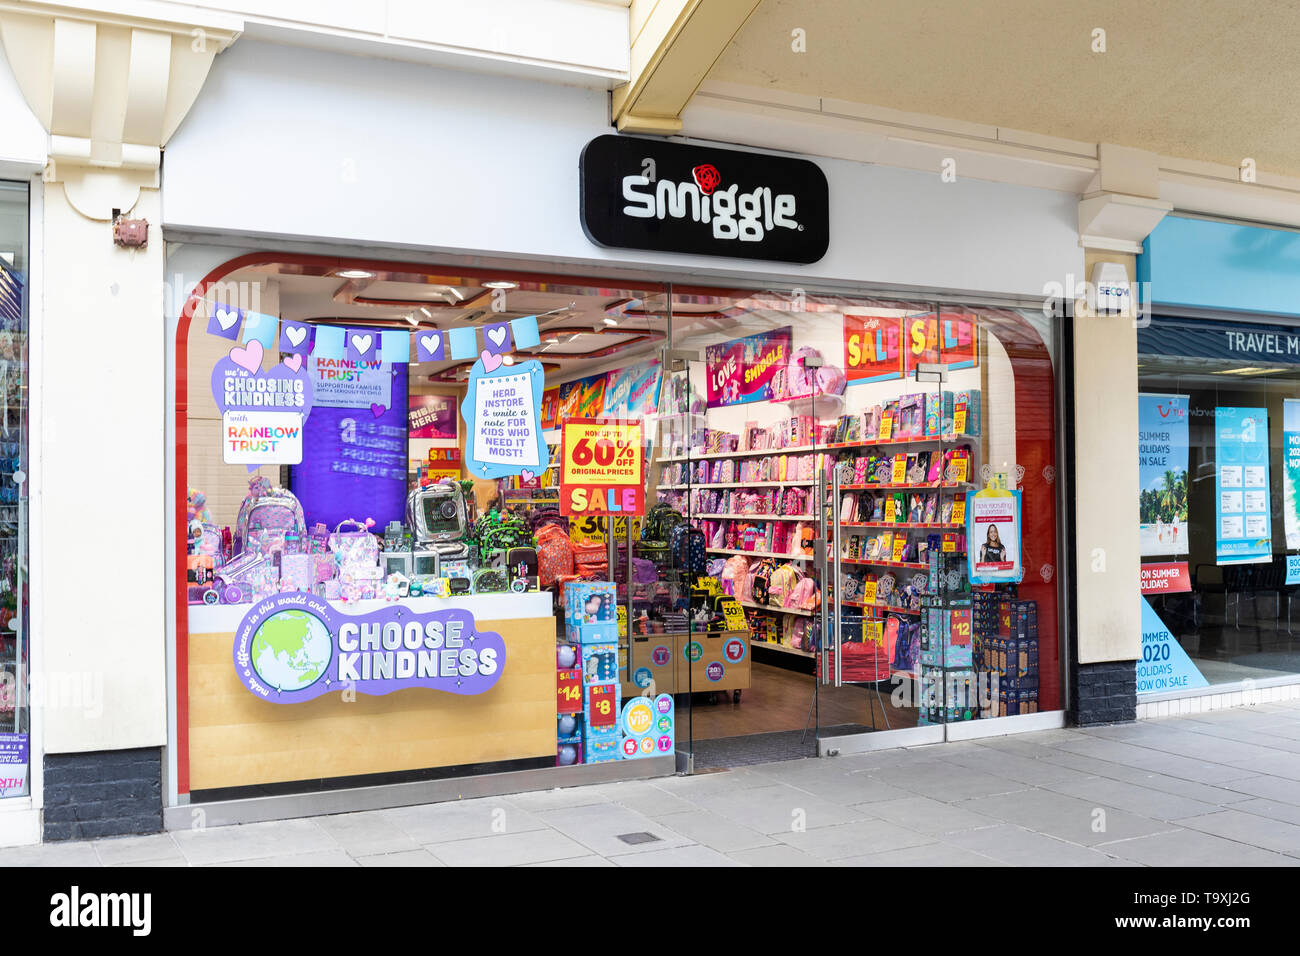 Smiggle - Stationery store in Salisbury, England, UK Stock Photo